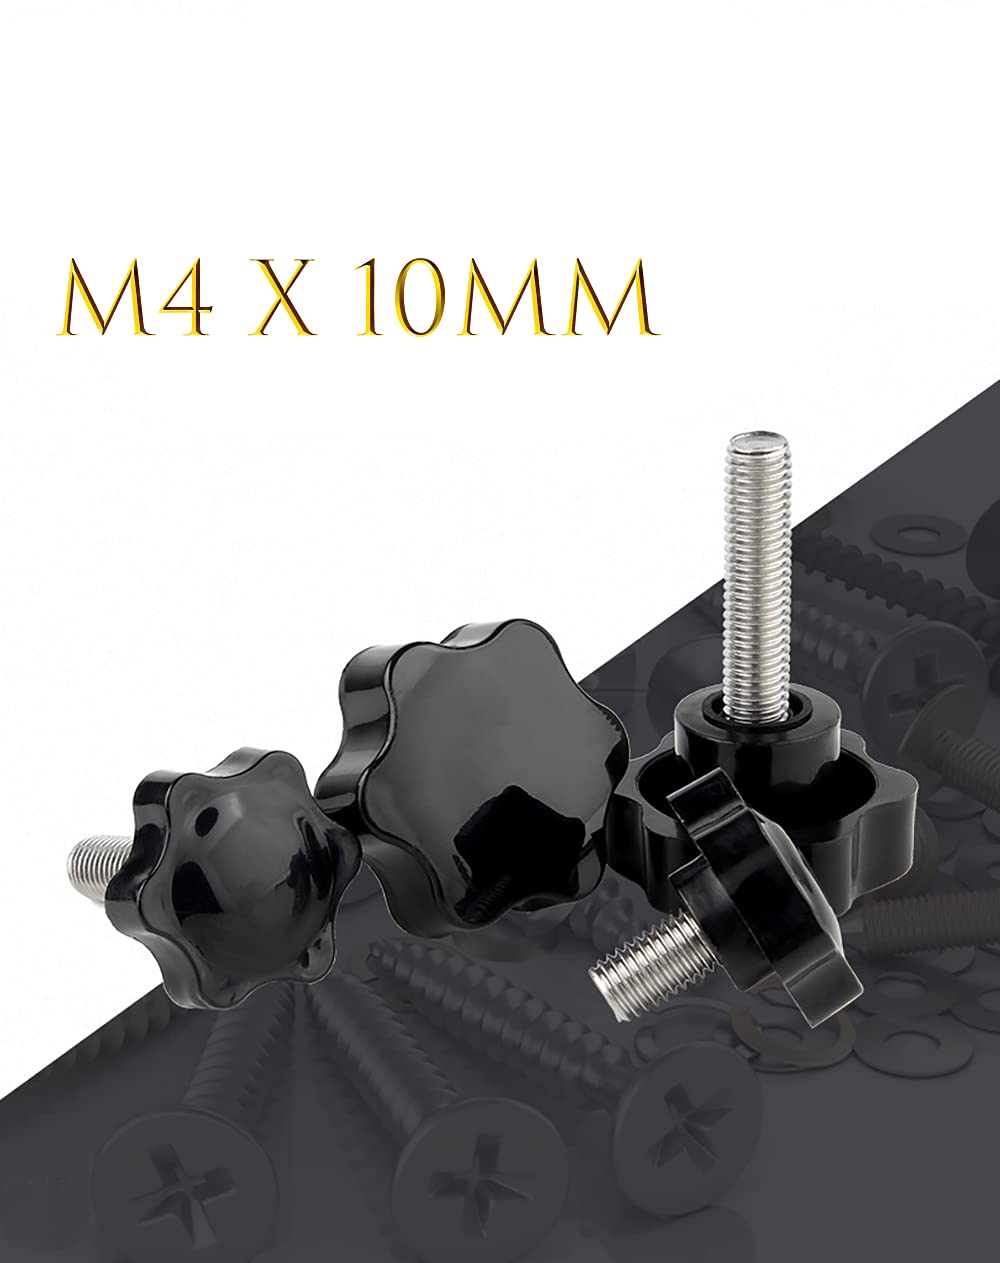 [Australia - AusPower] - M4 x 10mm Thread Clamping Knob, Thumb Screw, Star Hand Knob Tightening Screw Knob for Machinery, 30Pcs M4 x 10mm 